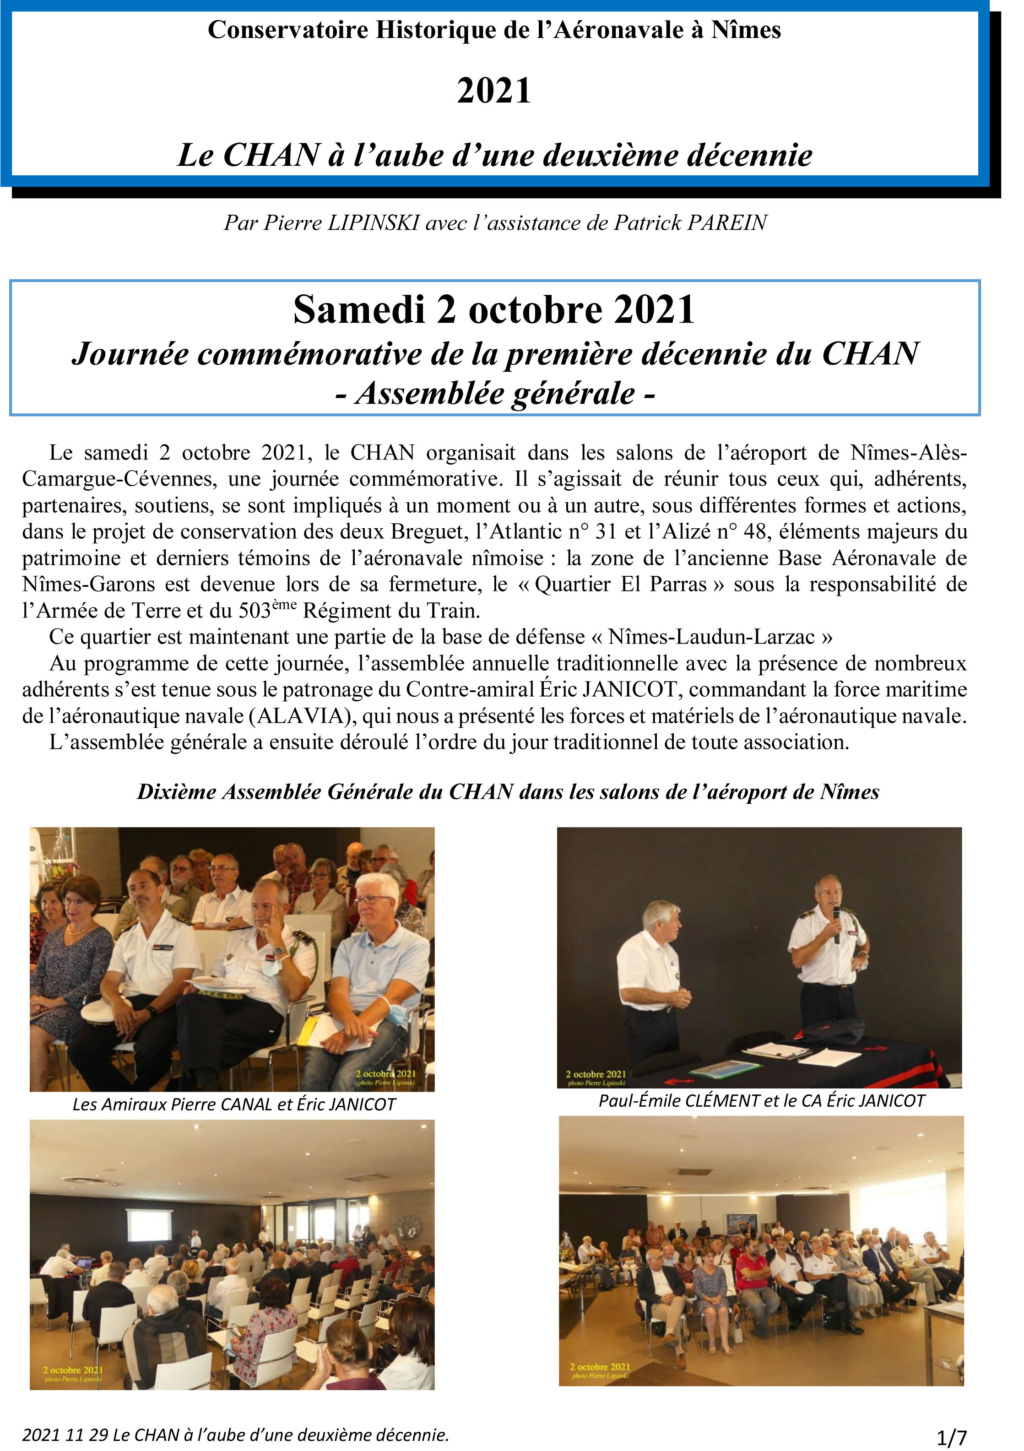 [Associations anciens marins] C.H.A.N.-Nîmes (Conservatoire Historique de l'Aéronavale-Nîmes) - Page 5 2021_110